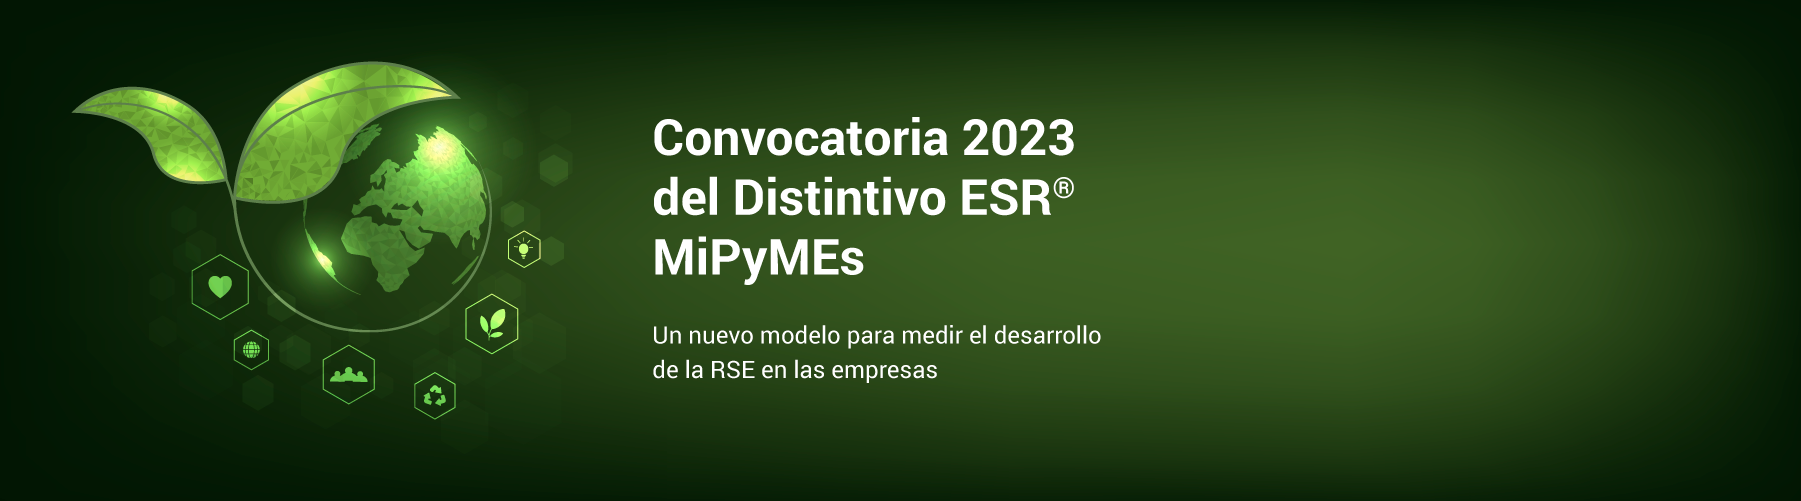 Convocatoria 2023 del Distintivo ESR MiPyMEs. Un nuevo modelo para medir el desarrollo de la RSE en las empresas.